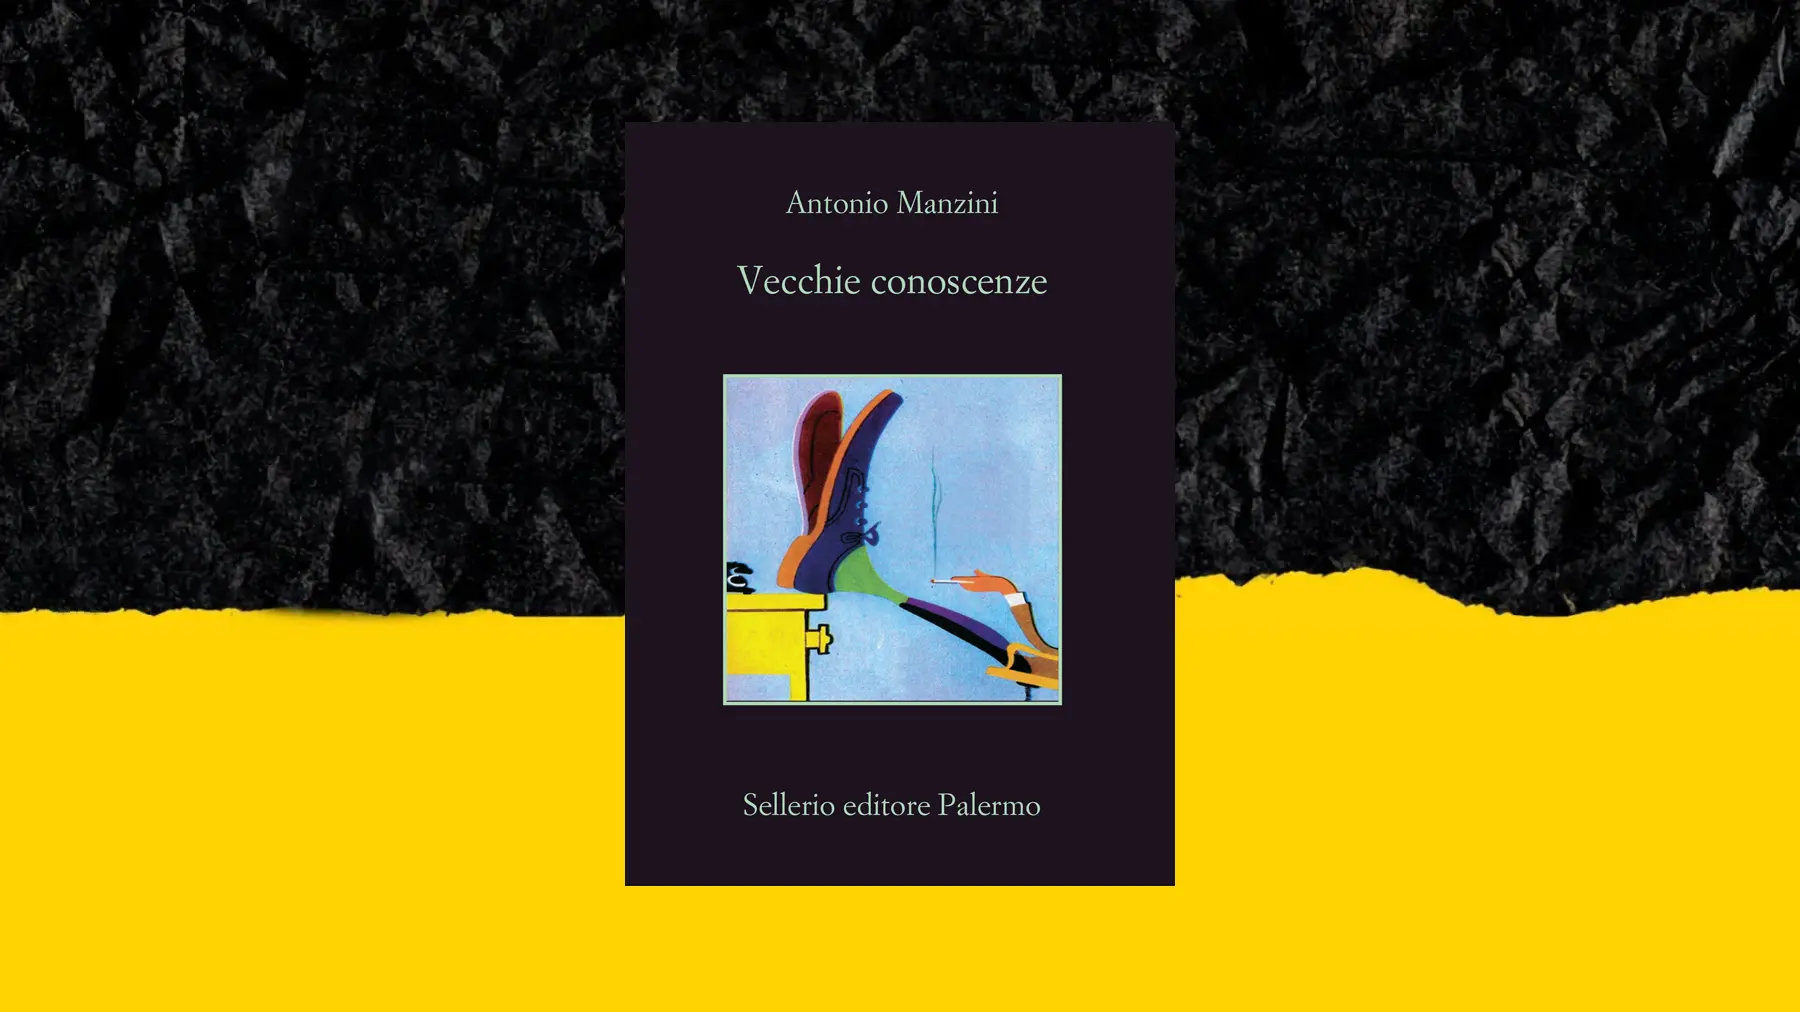 copertina del libro di Antonio Manzini Vecchie conoscenze